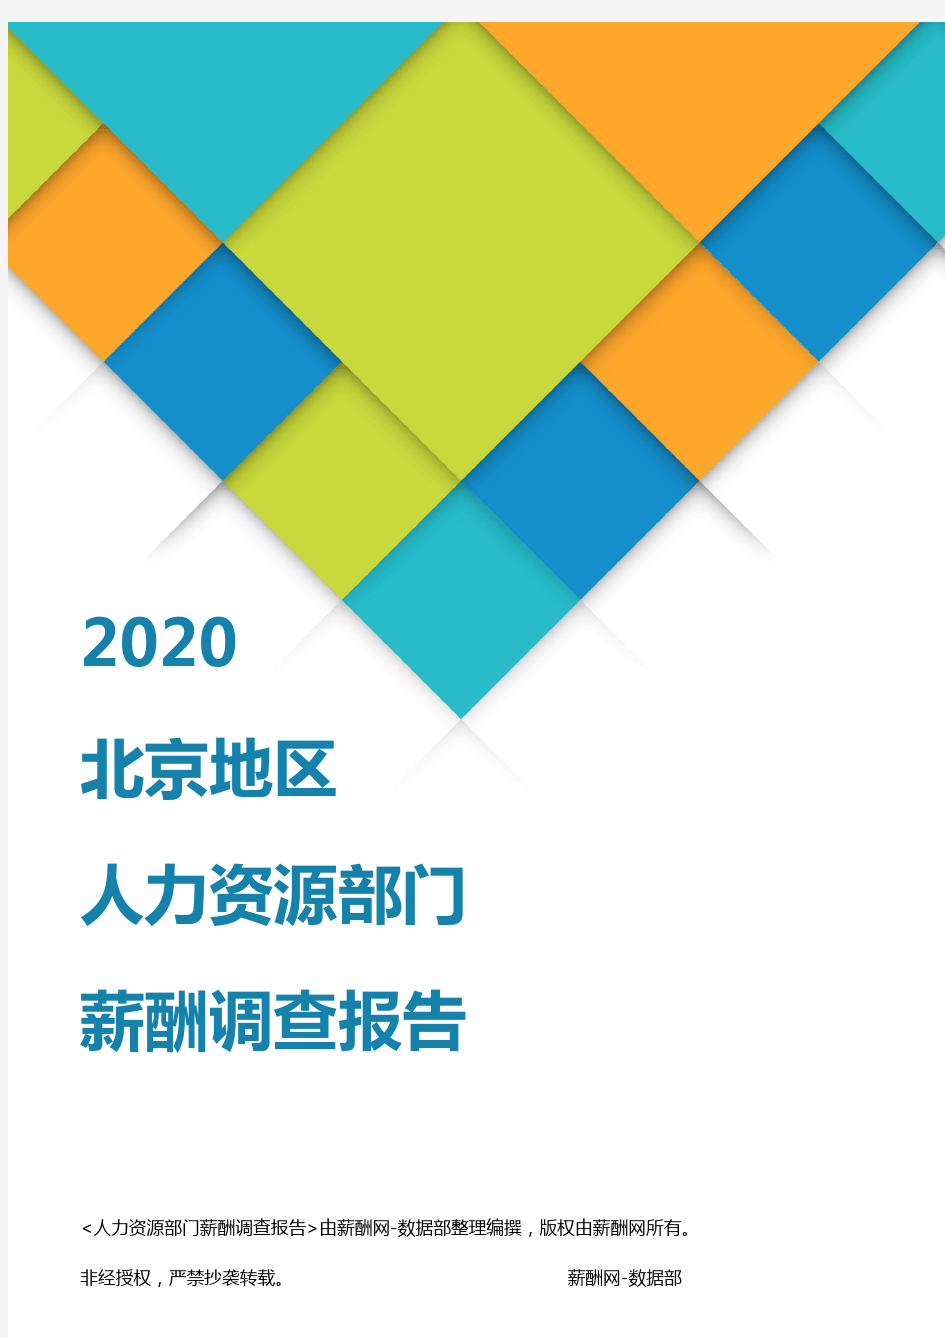 薪酬报告系列-2020北京地区人力资源部门薪酬调查报告